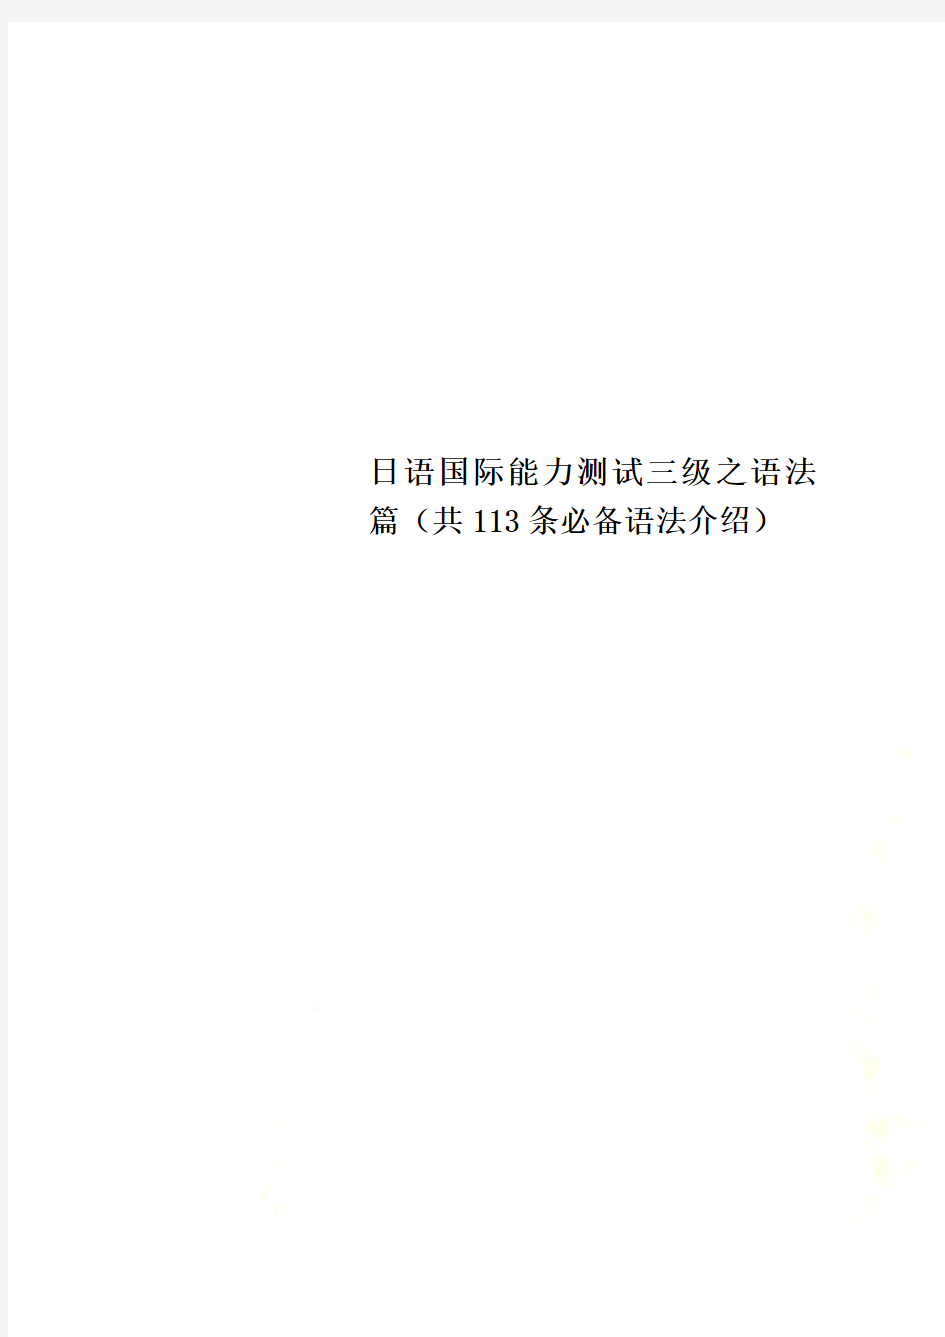 日语国际能力测试三级之语法篇(共113条必备语法介绍)